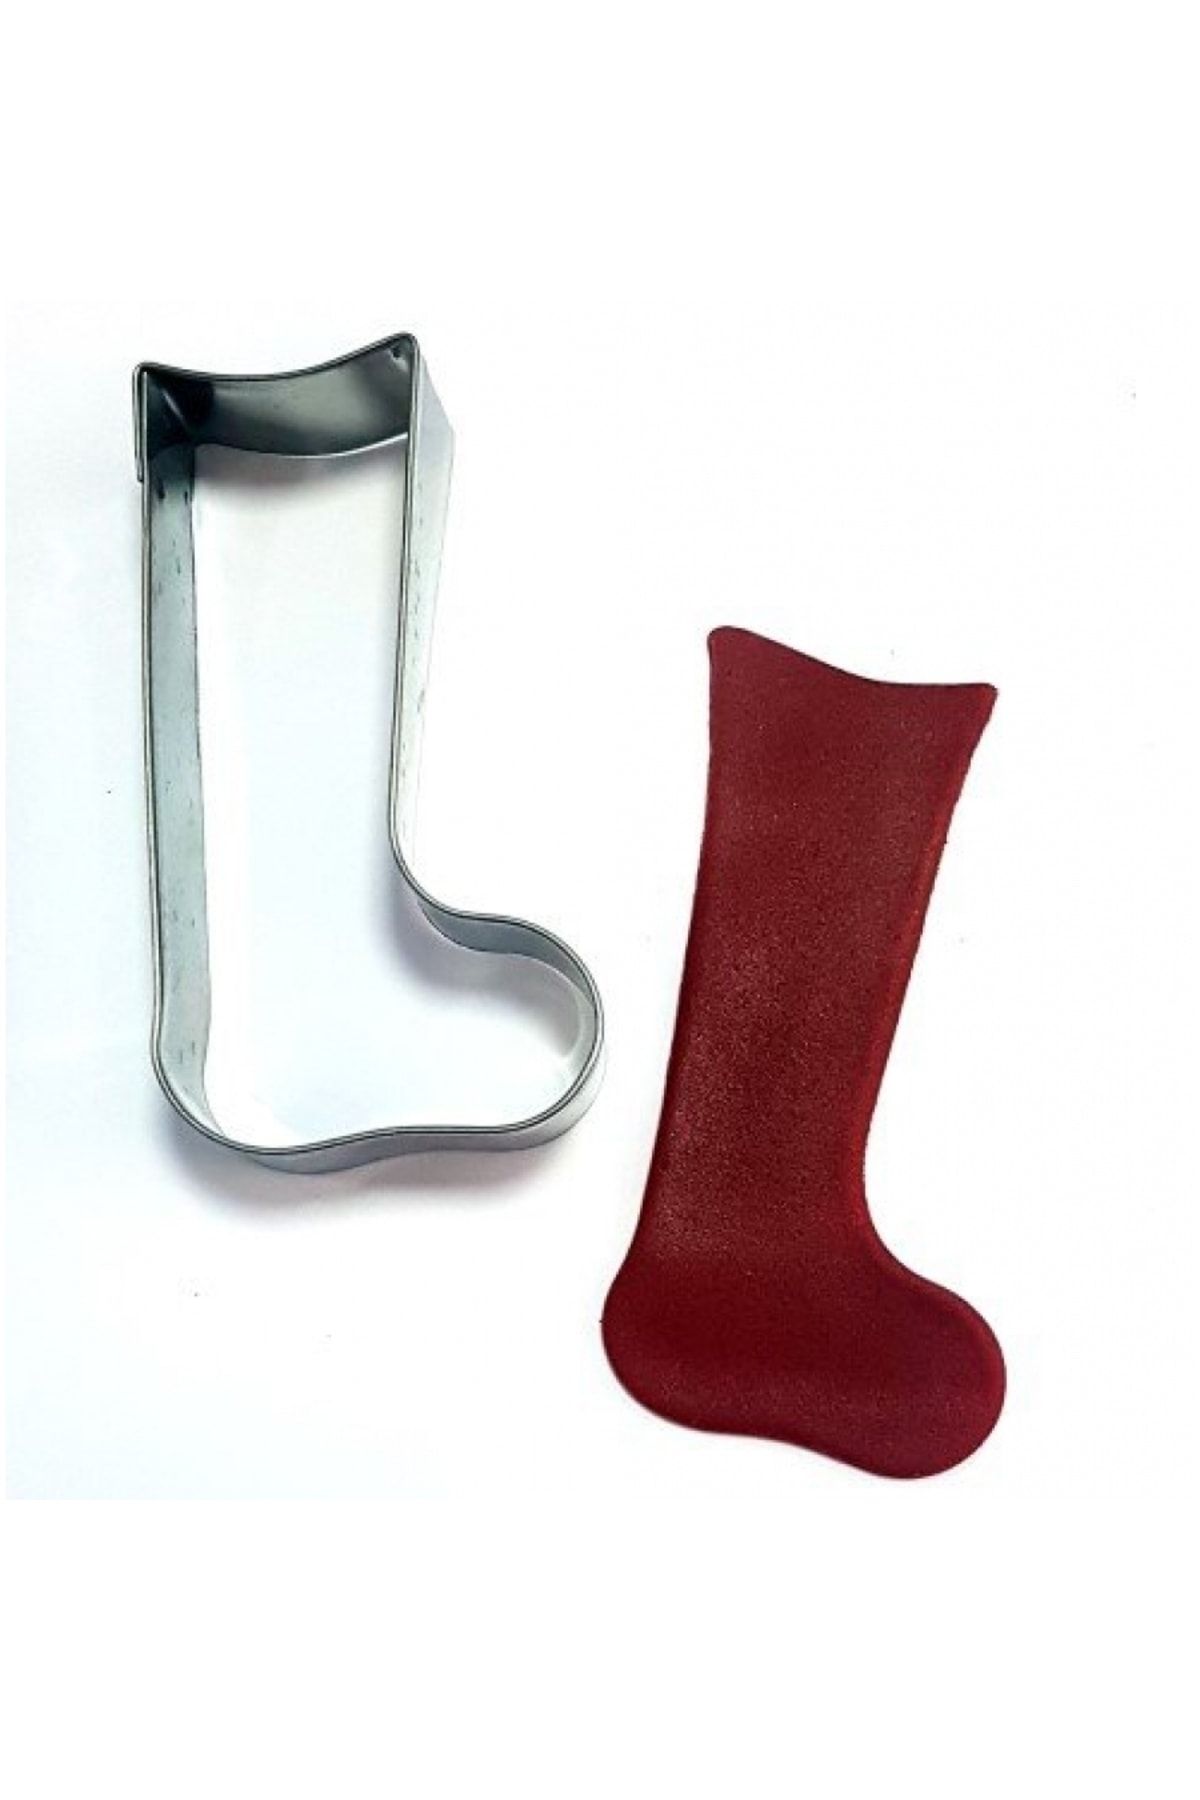 DEPPOSITE Uzun Çorap Kurabiye Kalıbı 10 X 5,5 Cm